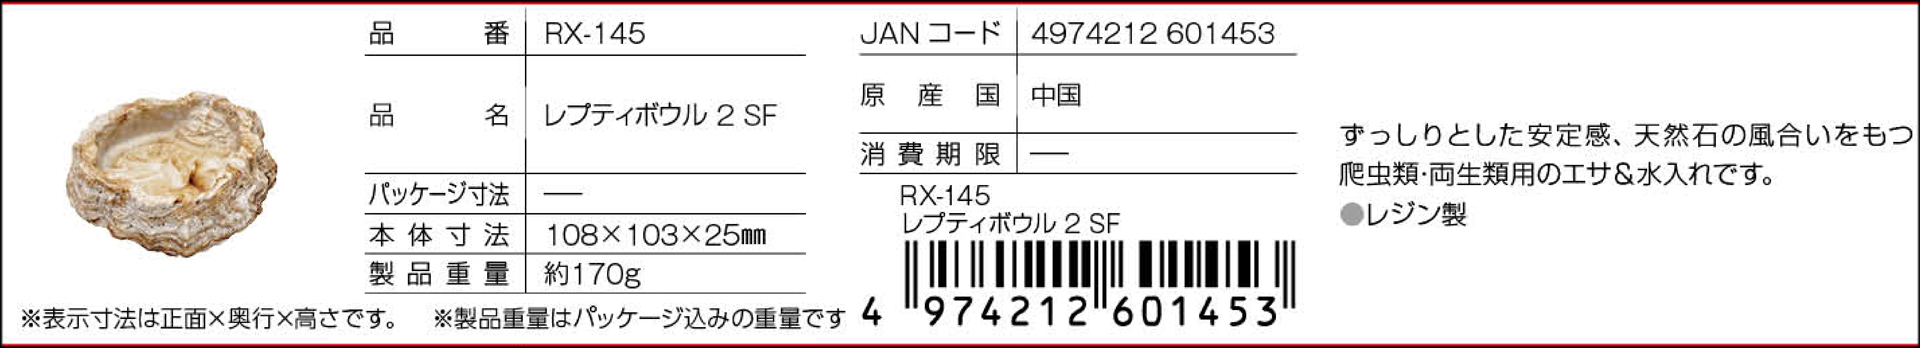 レプティボウル2 SF RX-145 スドー ハープクラフト 販売 通販